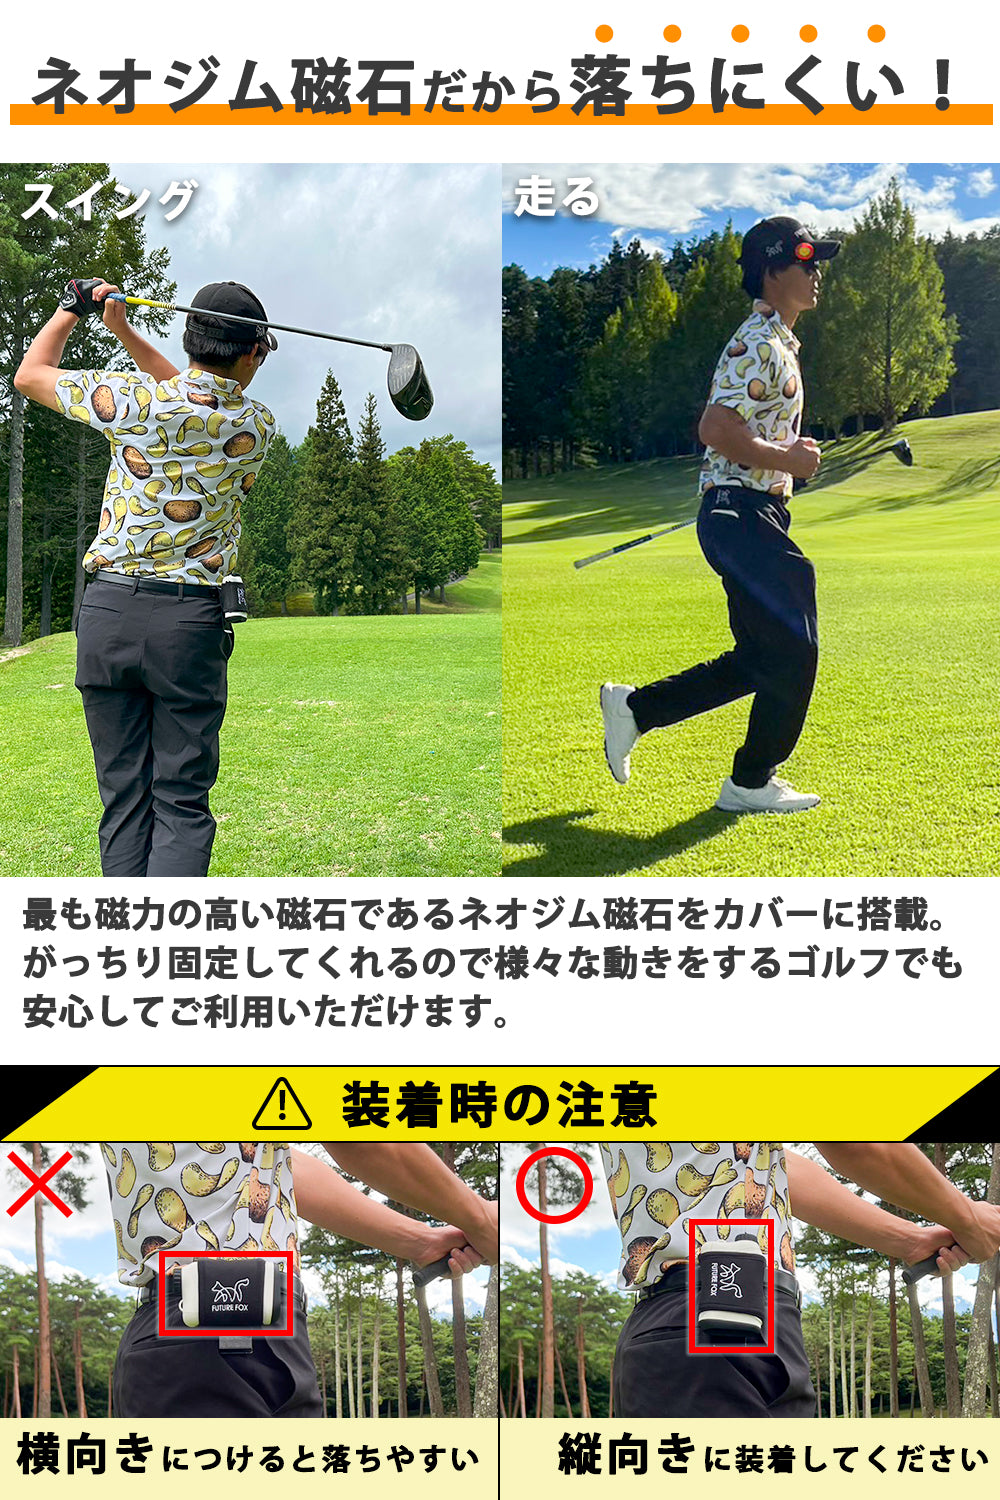 【美品】ピンイーグル　ゴルフ用レーザー距離計